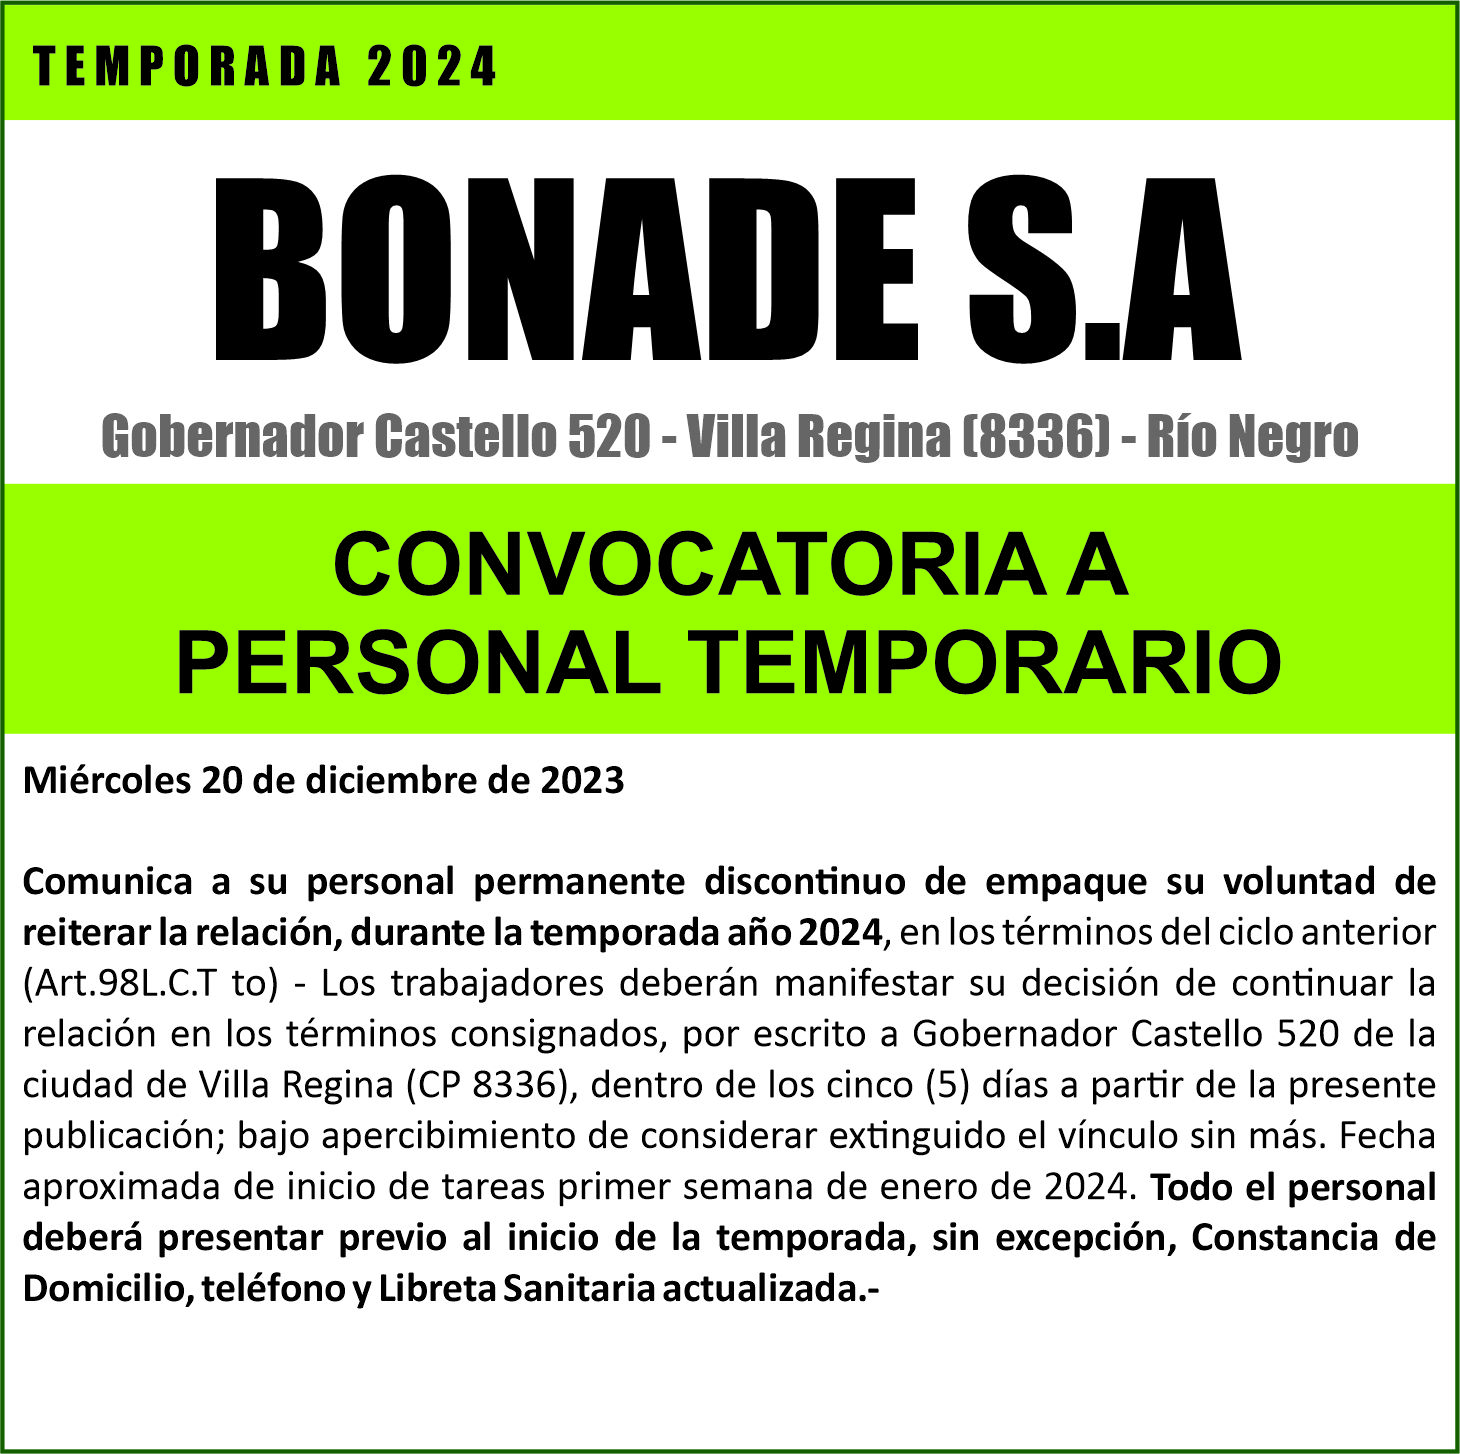 BONADE S.A convoca a su personal temporario 2024